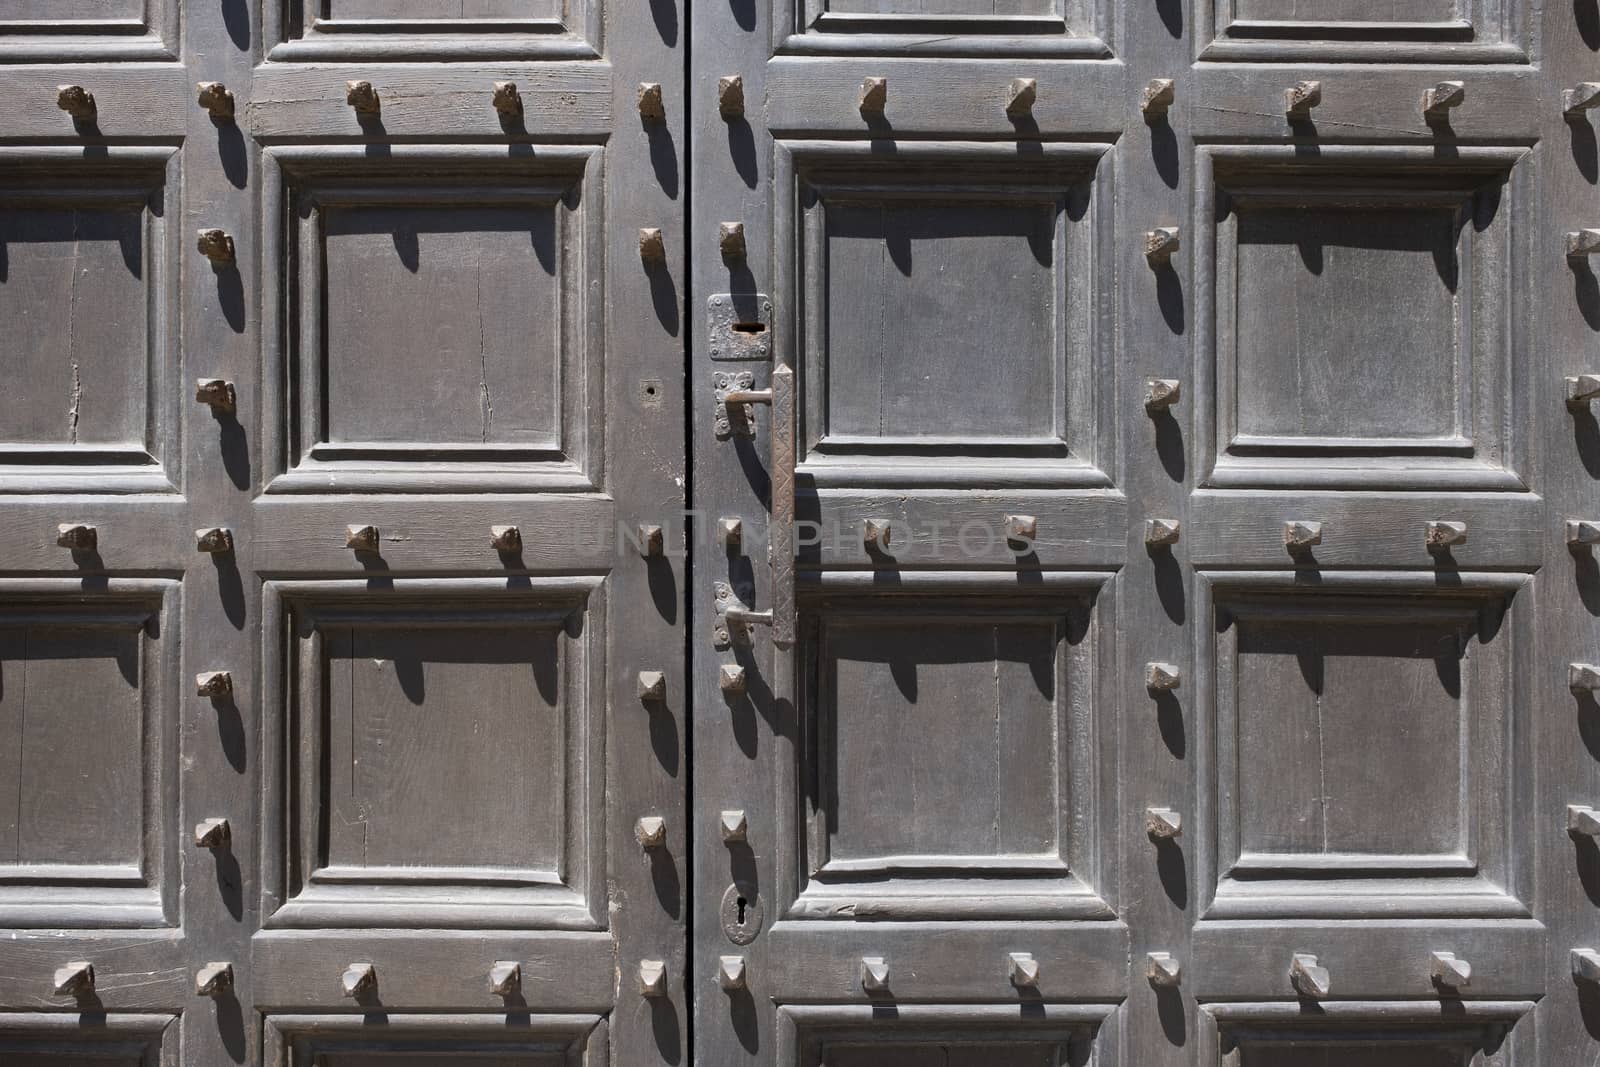 Metal spikes on old wooden door by Tjeerdkruse